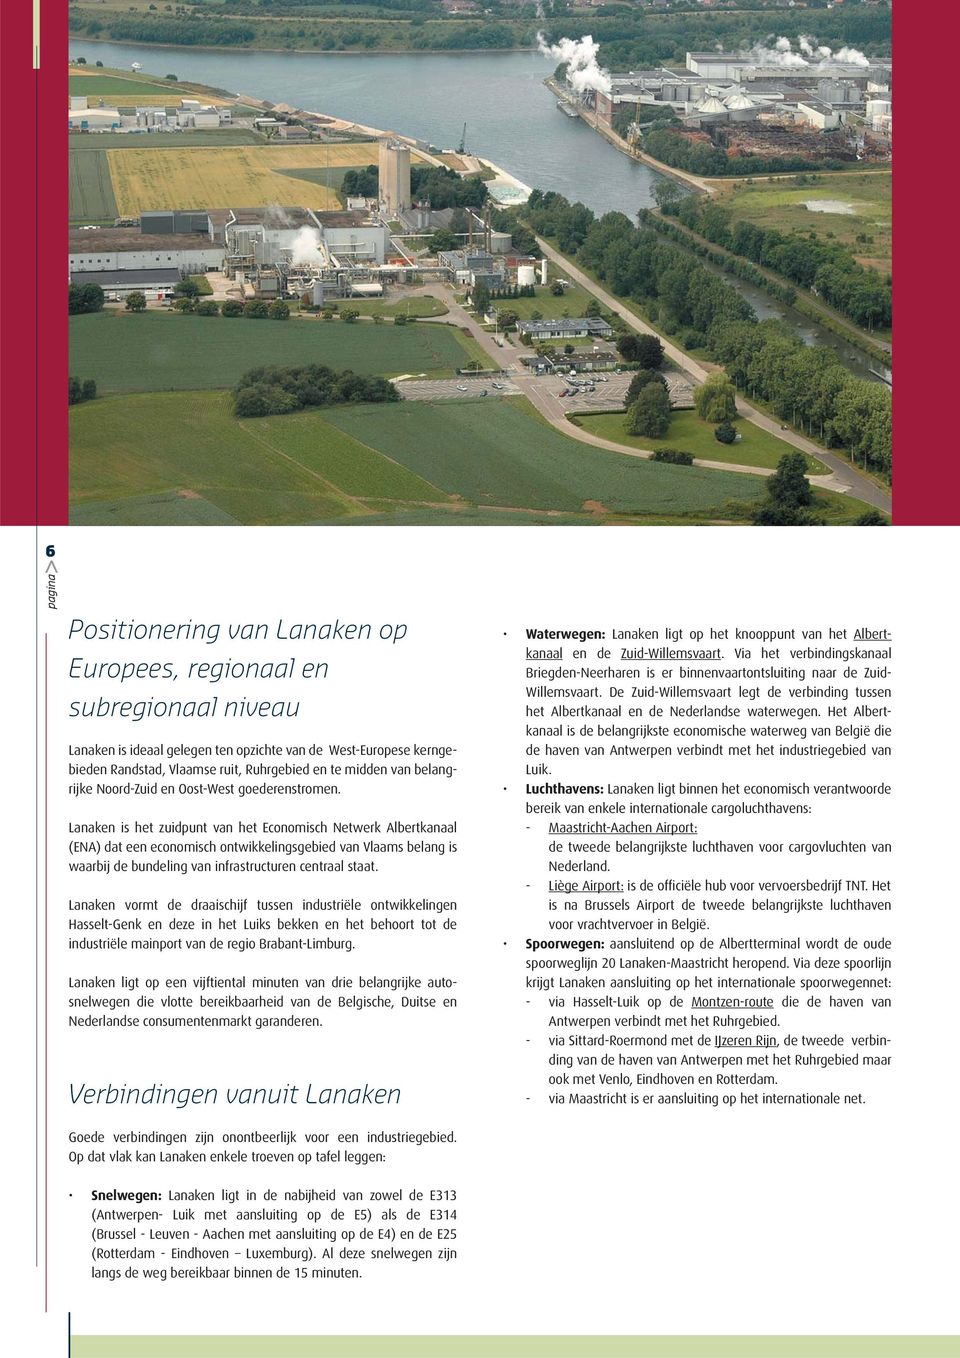 Lanaken is het zuidpunt van het Economisch Netwerk Albertkanaal (ENA) dat een economisch ontwikkelingsgebied van Vlaams belang is waarbij de bundeling van infrastructuren centraal staat.